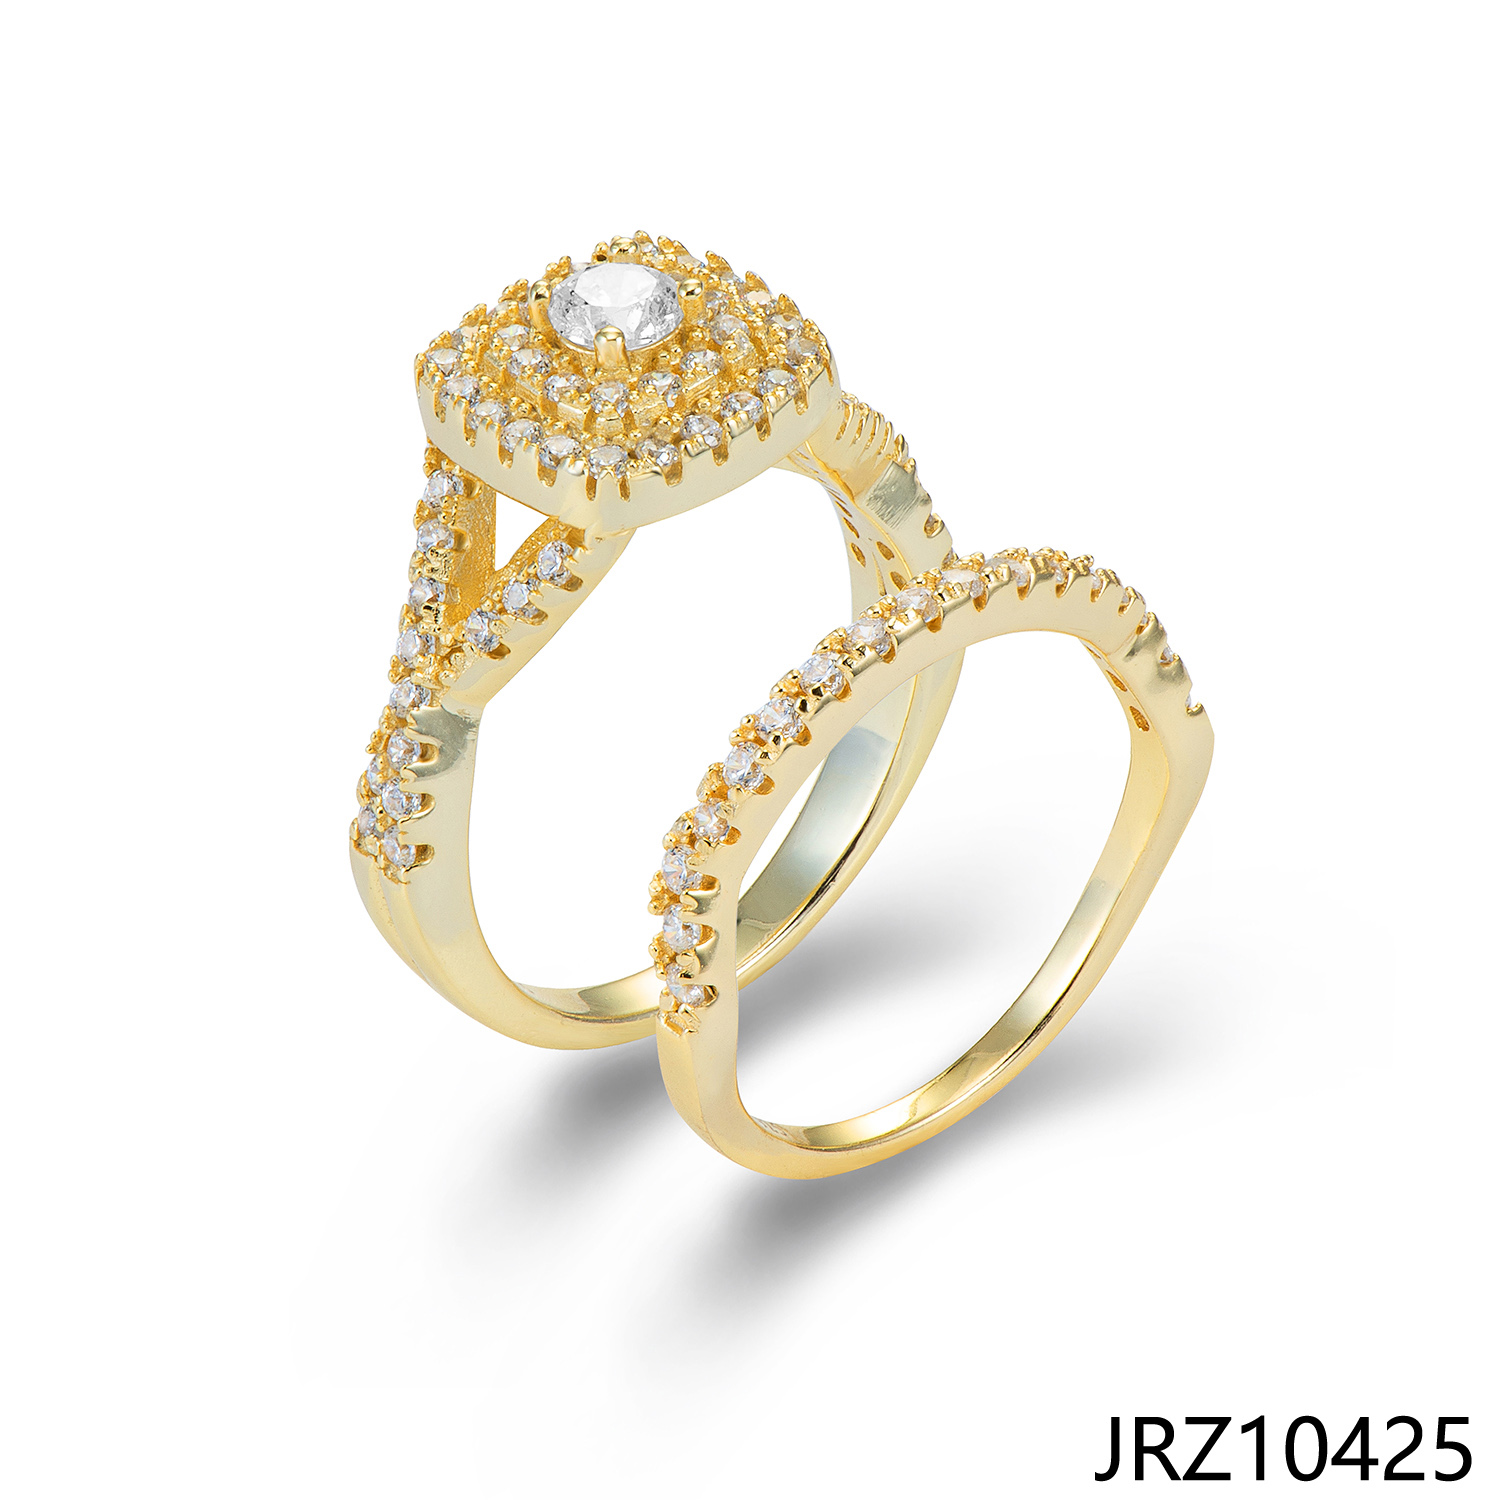 JASEN JEWELRY wedding rings 925 silver women rings set